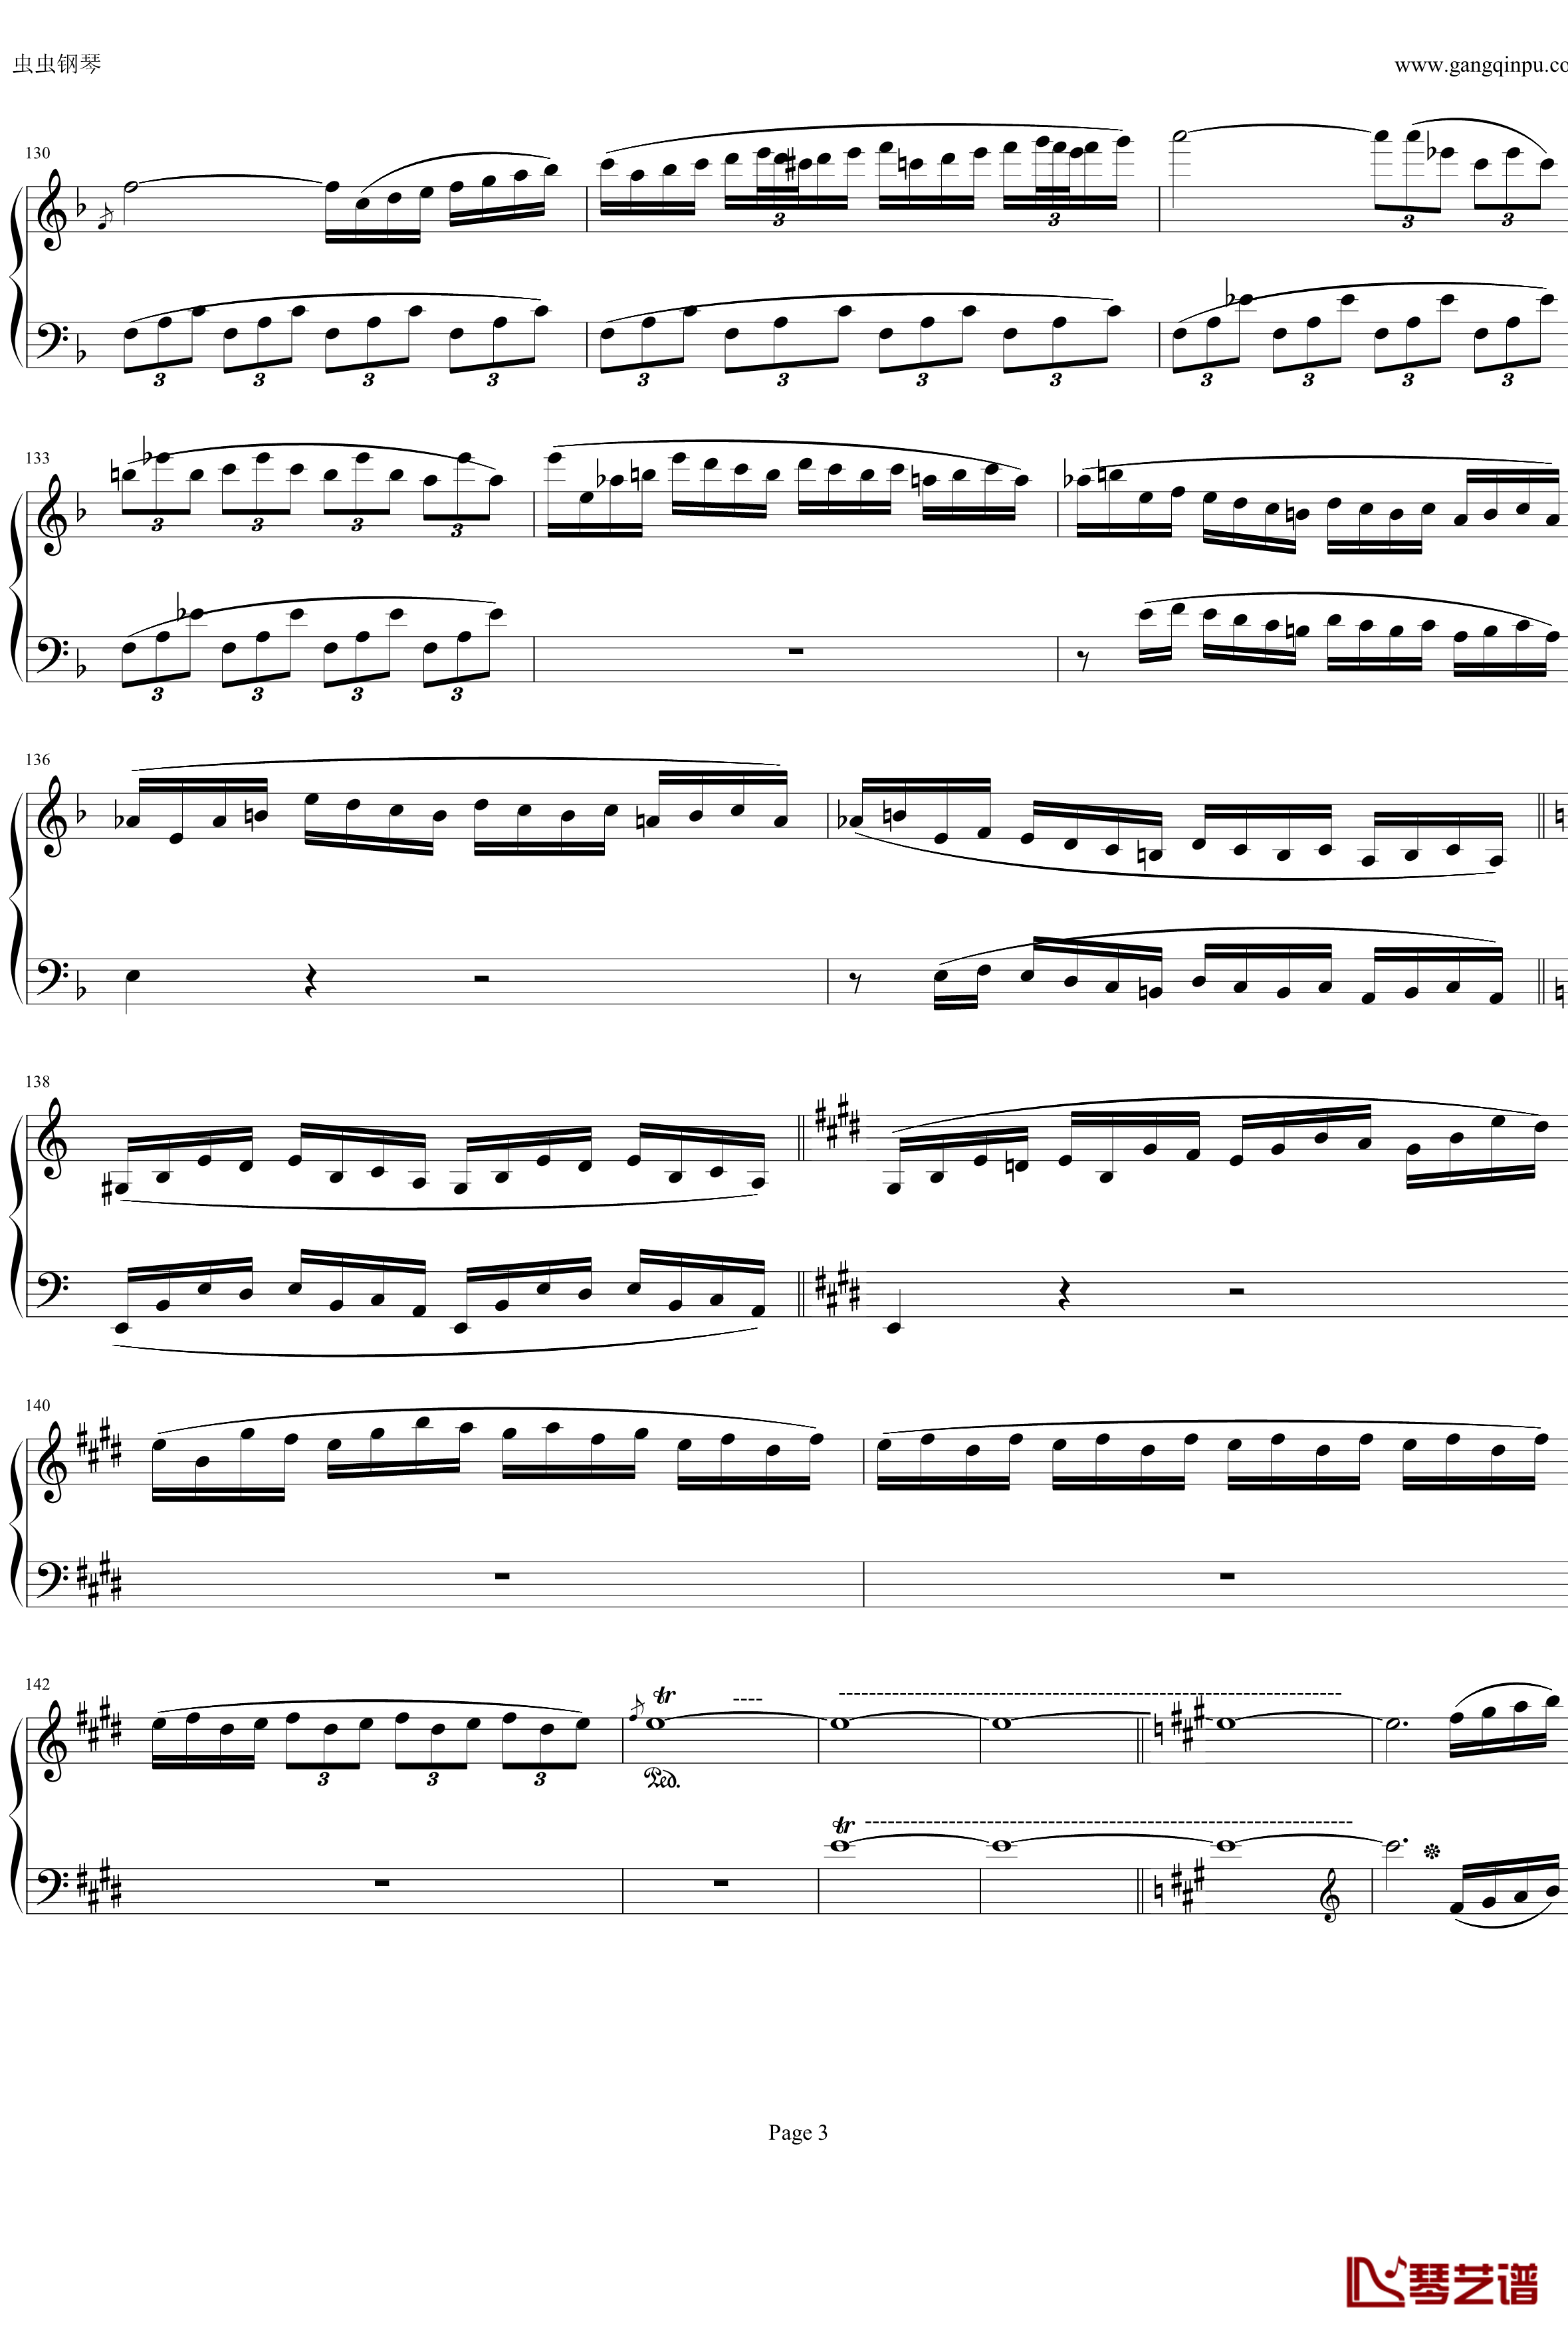 钢琴协奏曲Op61第一乐章钢琴谱-贝多芬-beethoven3